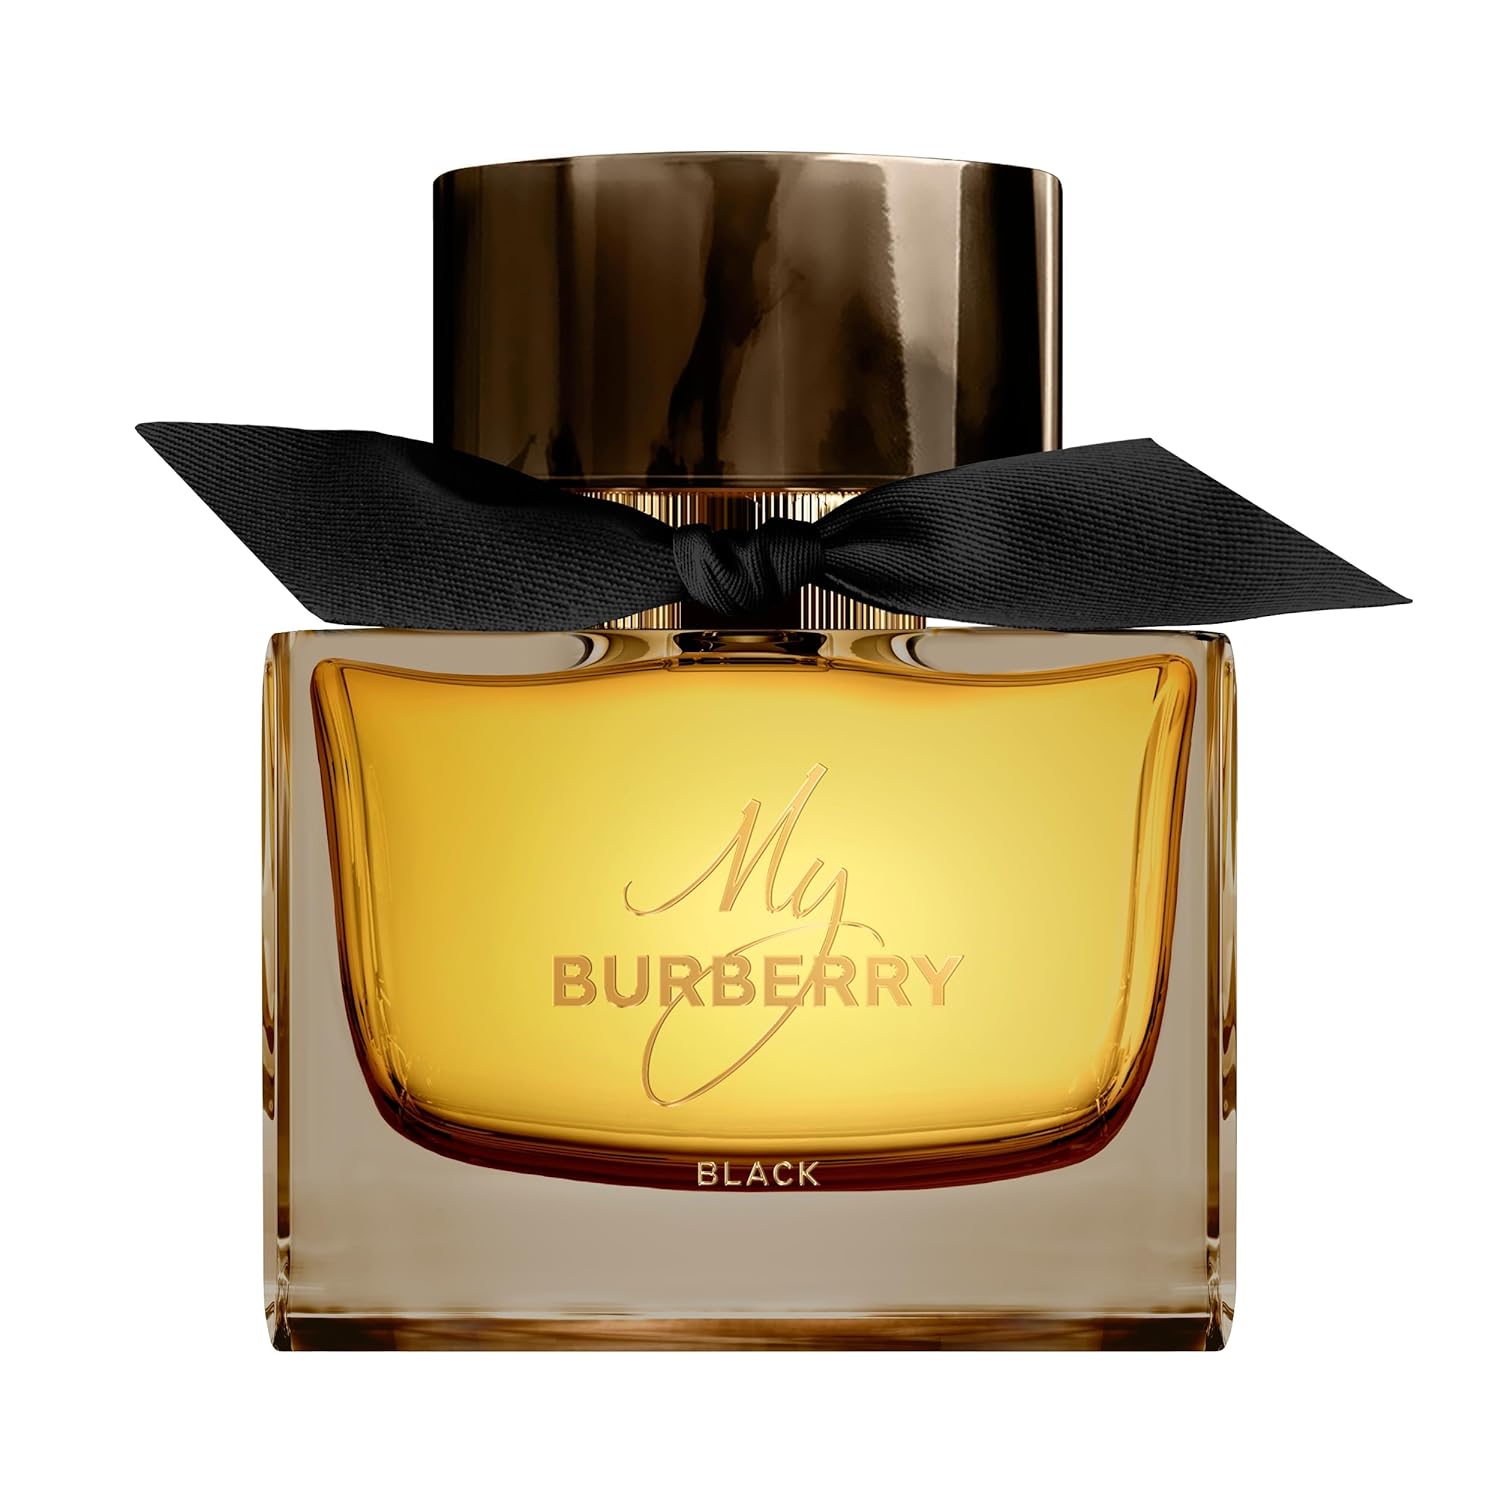 My Burberry Black 90ml Eau De Parfum Spray for Women